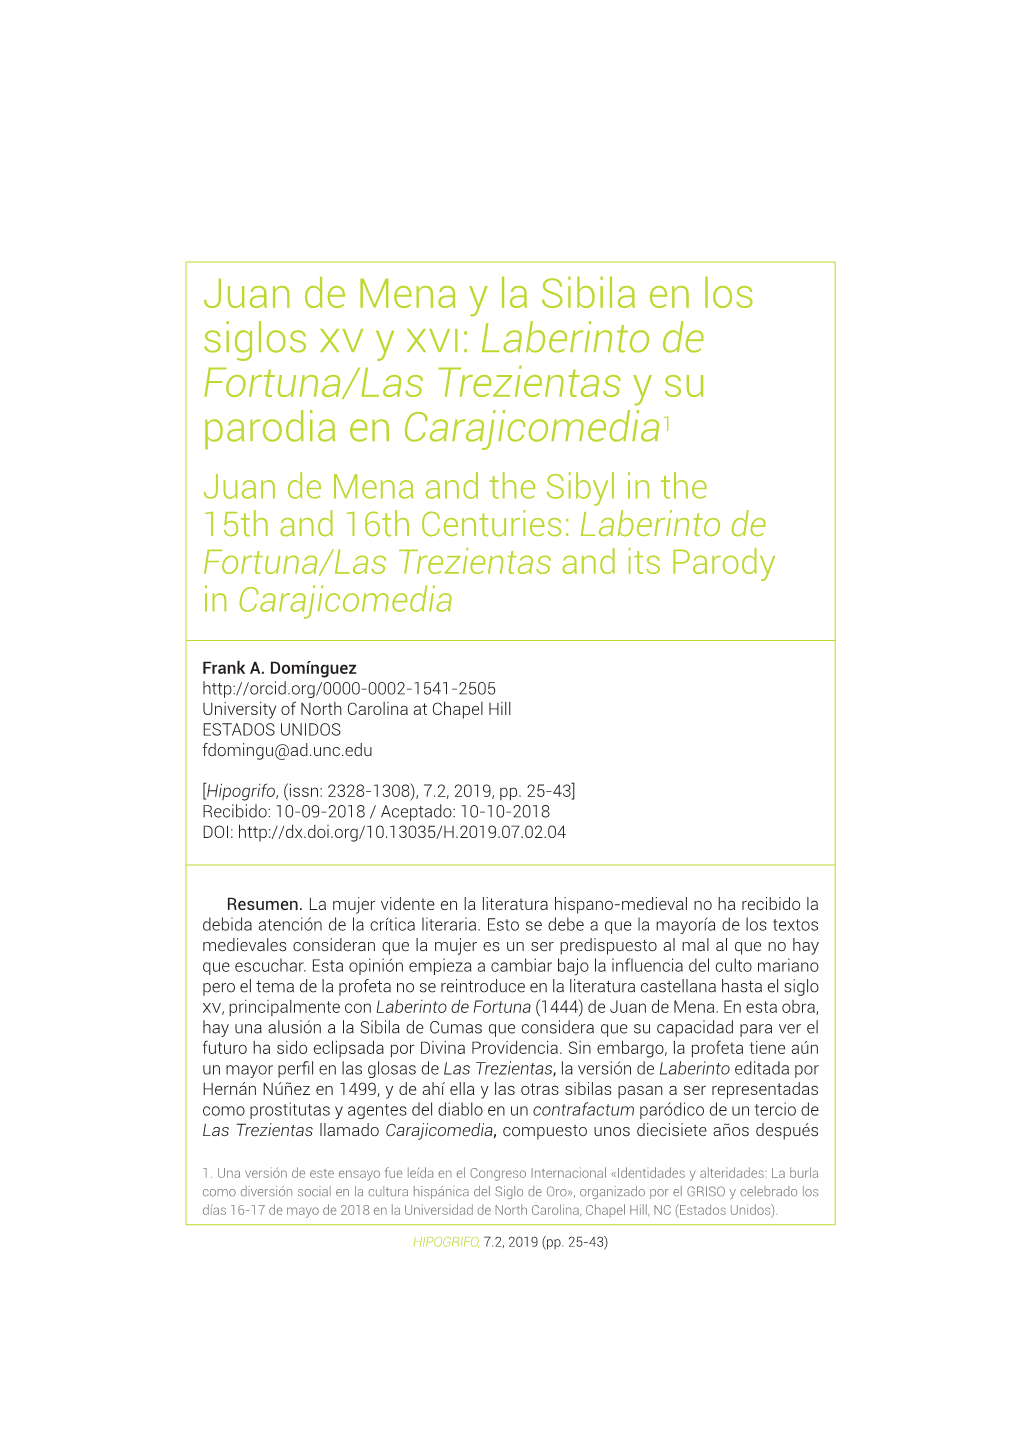 Juan De Mena Y La Sibila En Los Siglos Xv Y Xvi: Laberinto De Fortuna/Las